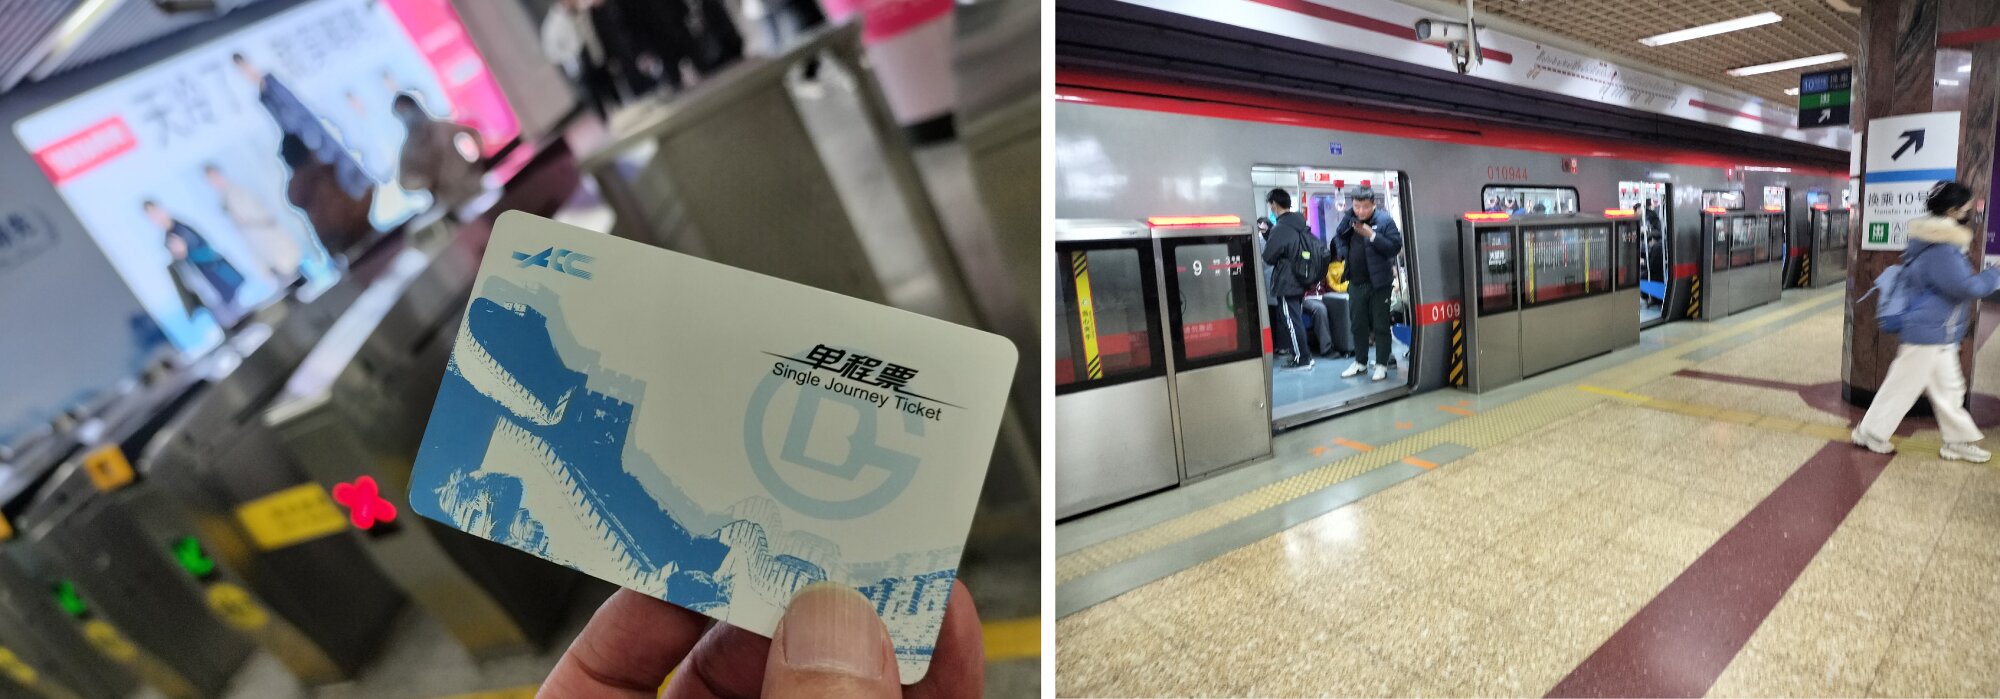 北京の地下鉄は市内外を網羅している。ただ、キャッシュレス決済を使えない外国人観光客は窓口で現金で支払い、一回限りのカードチケットを手に入れなければならない。（撮影・筆者）